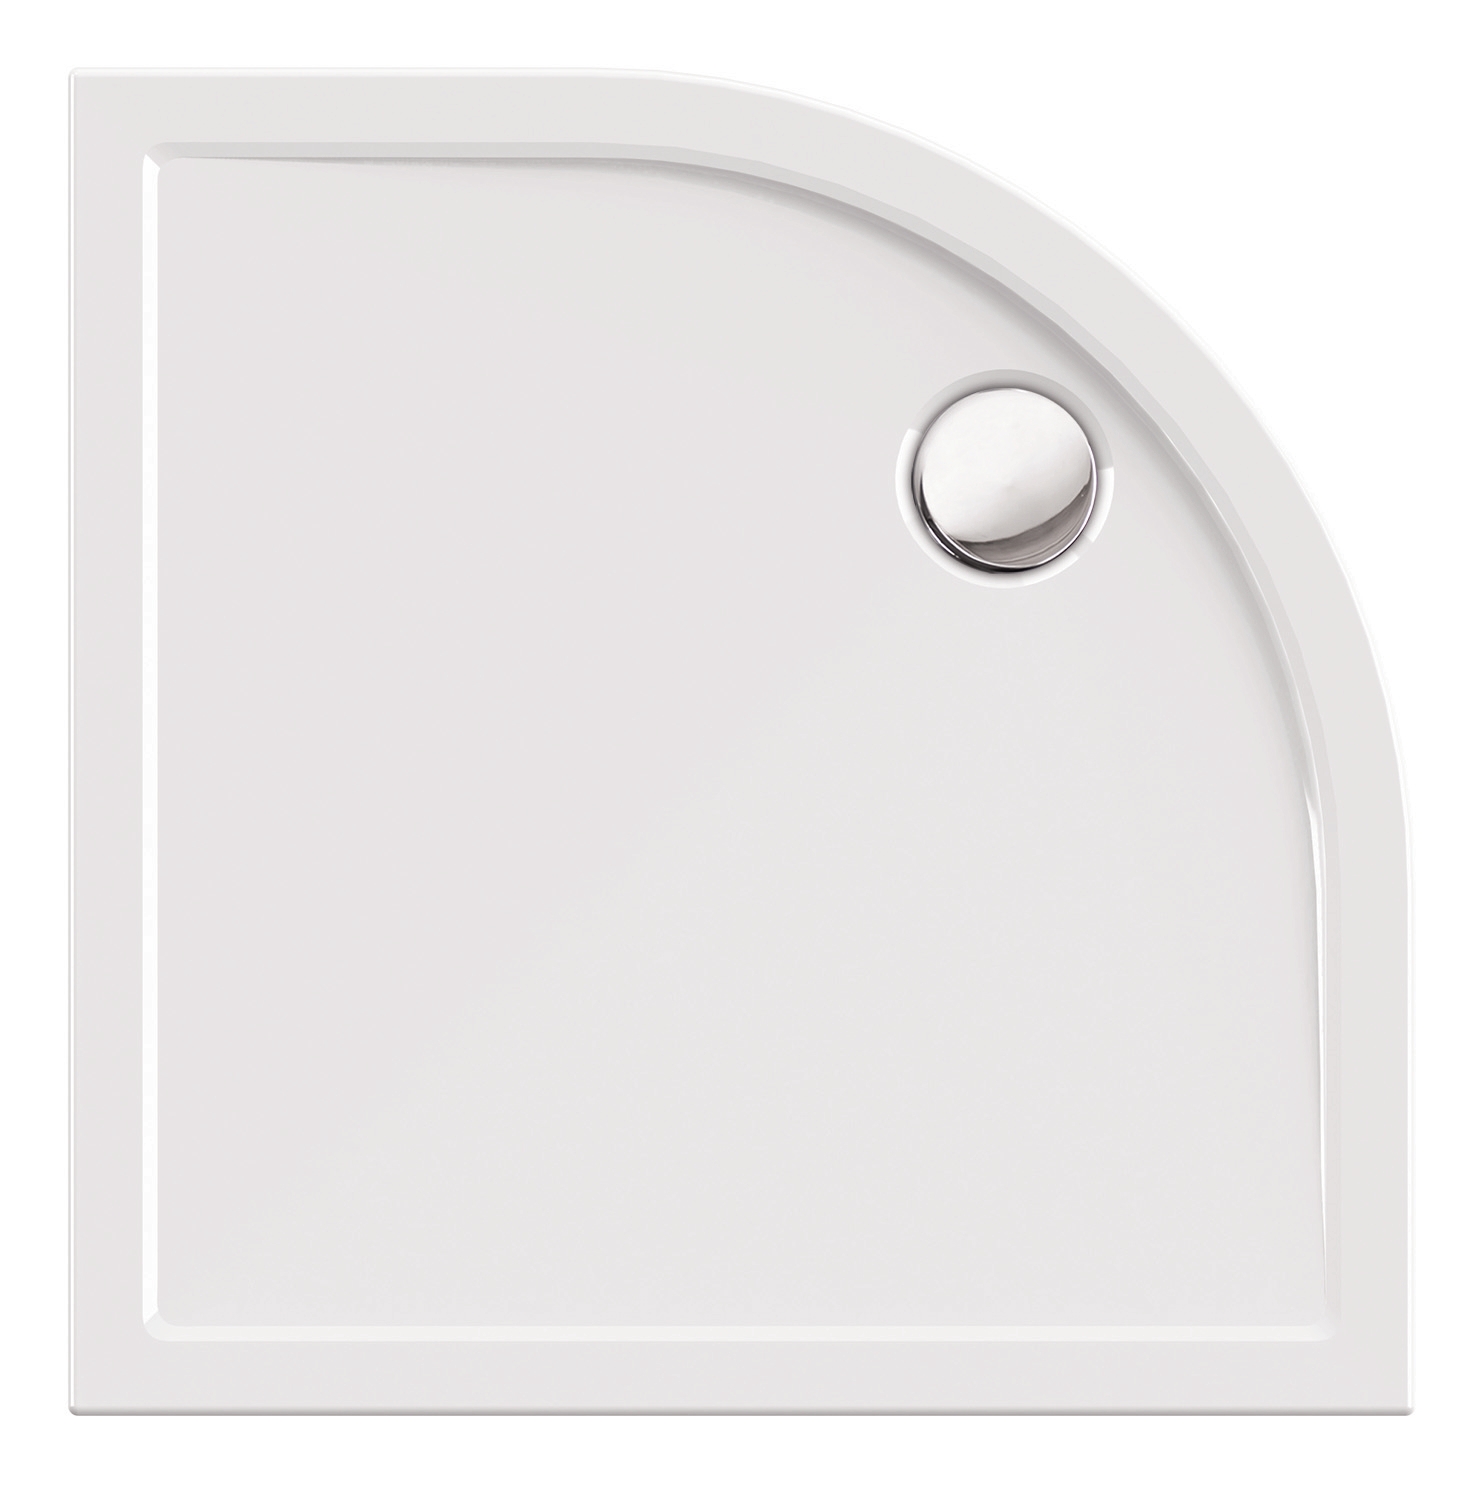 Viertelkreis-Brausewanne Modern Select in Weiß, 90 x 90 x 2,5 cm